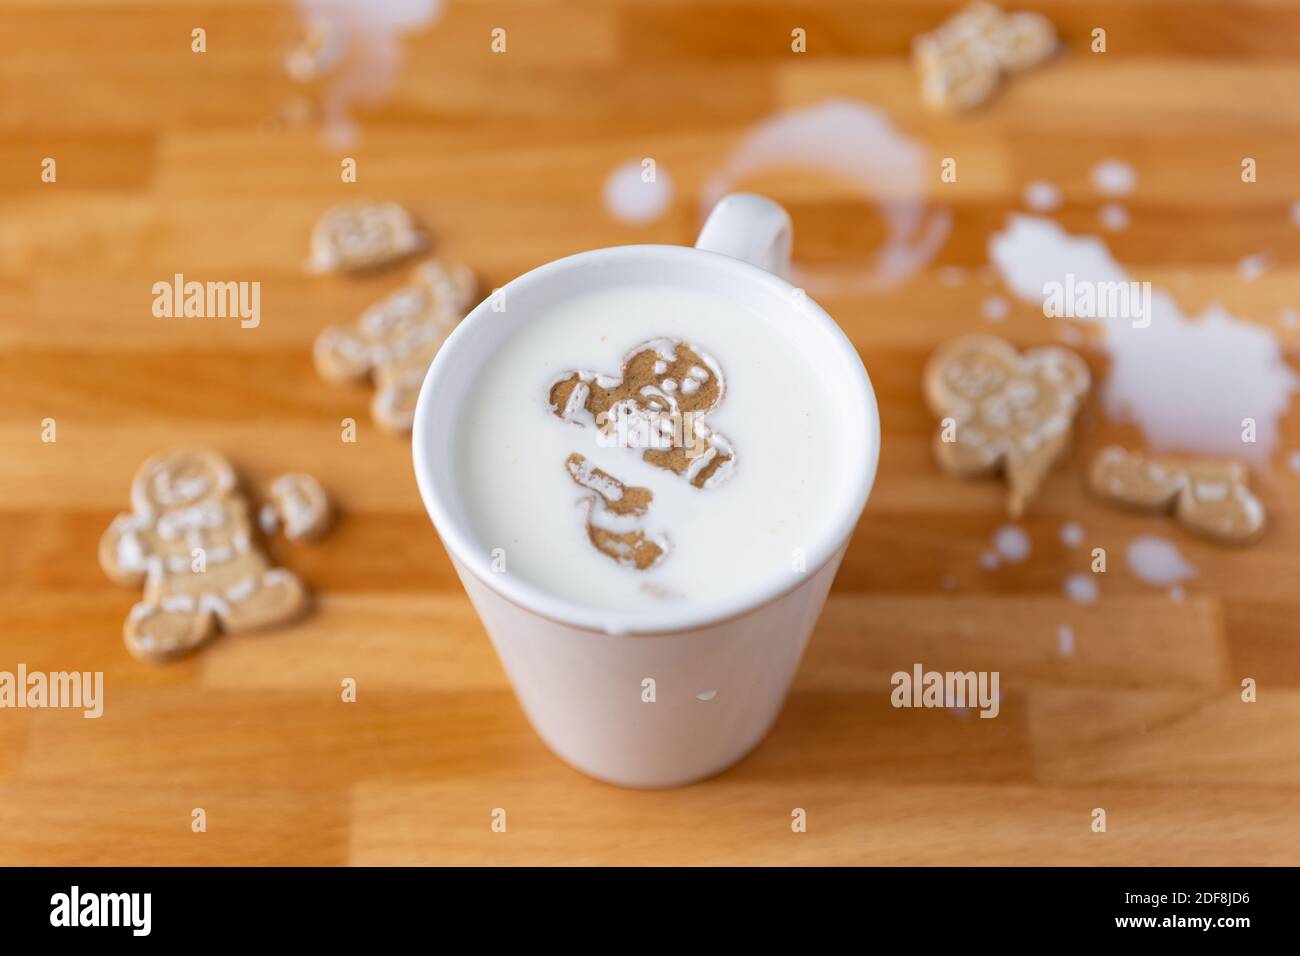 Broken Gingerbread Man Cookie Floating In Mug Of Milk With Broken Cookies And Spilt Milk Stock Photo